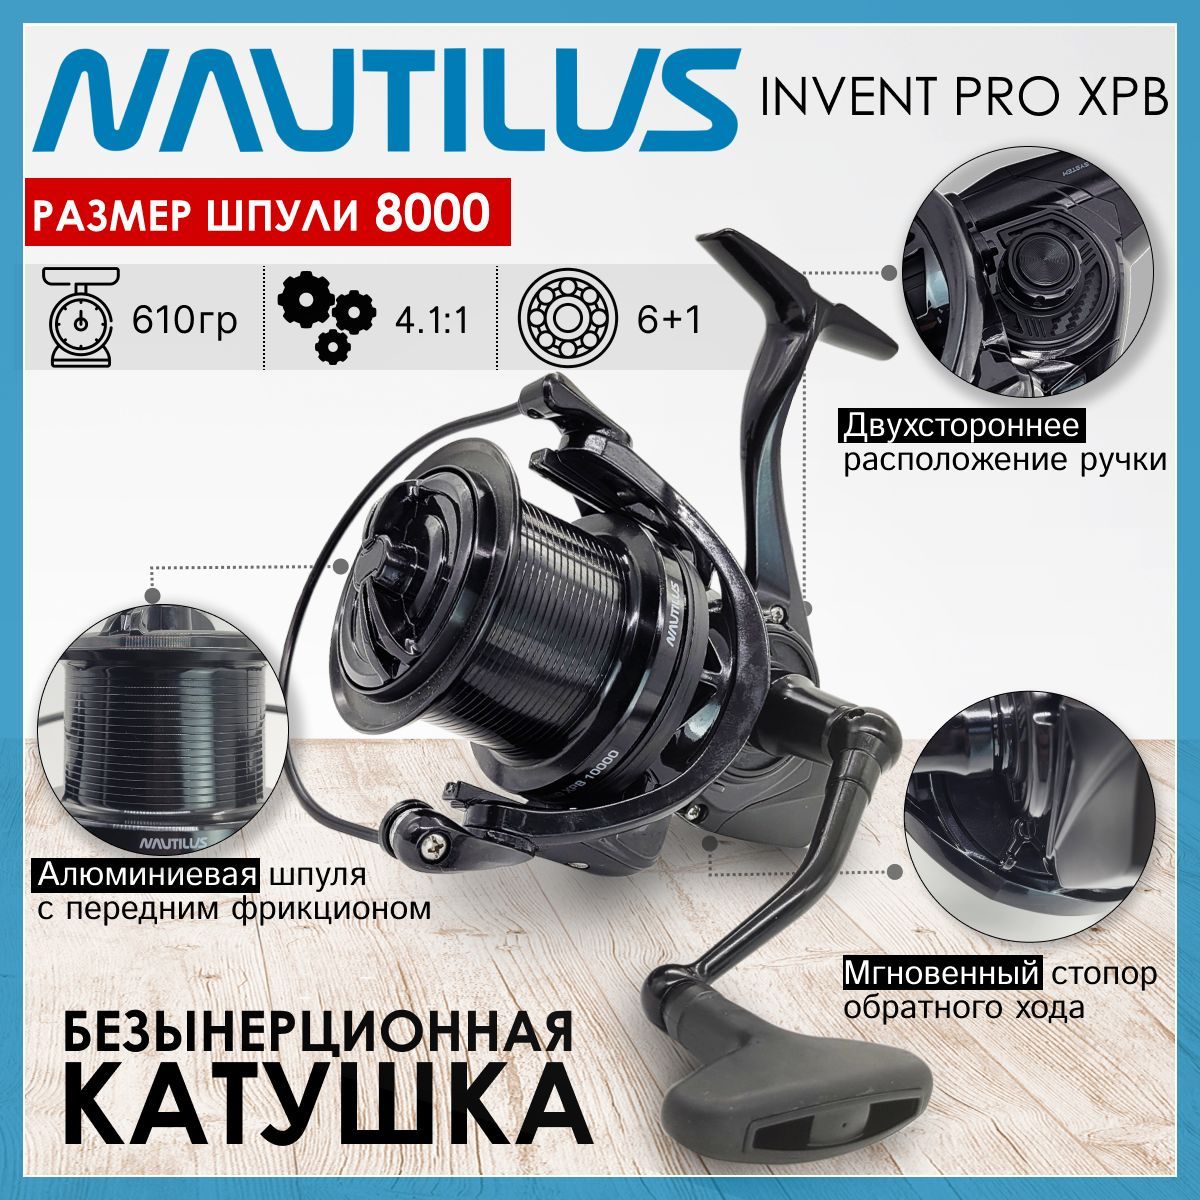 Катушка Nautilus INVENT PRO XPB 8000, с пердним фрикционом